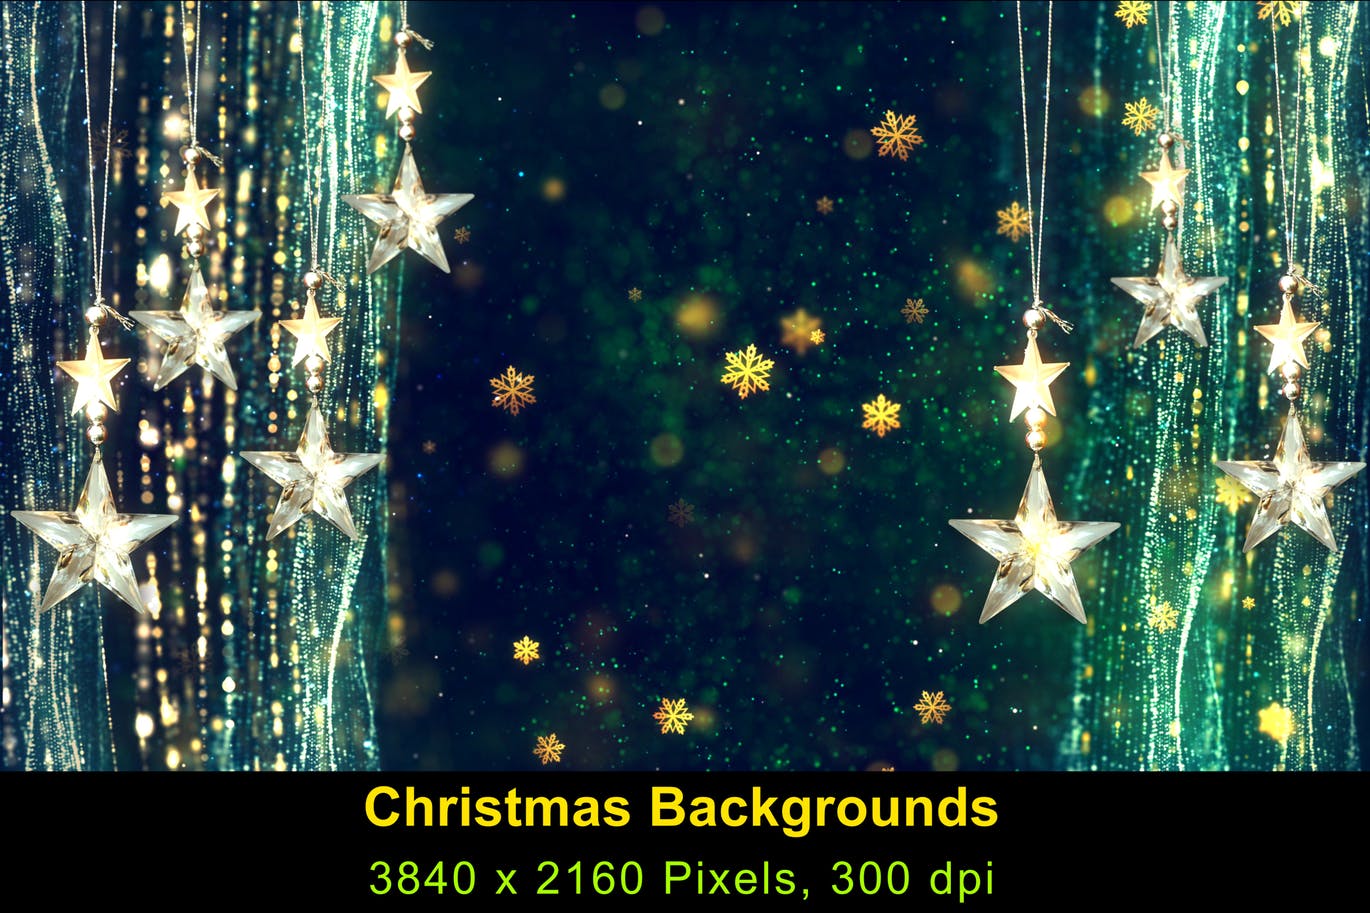 高清圣诞节灯饰背景素材v2 Christmas Background 2插图